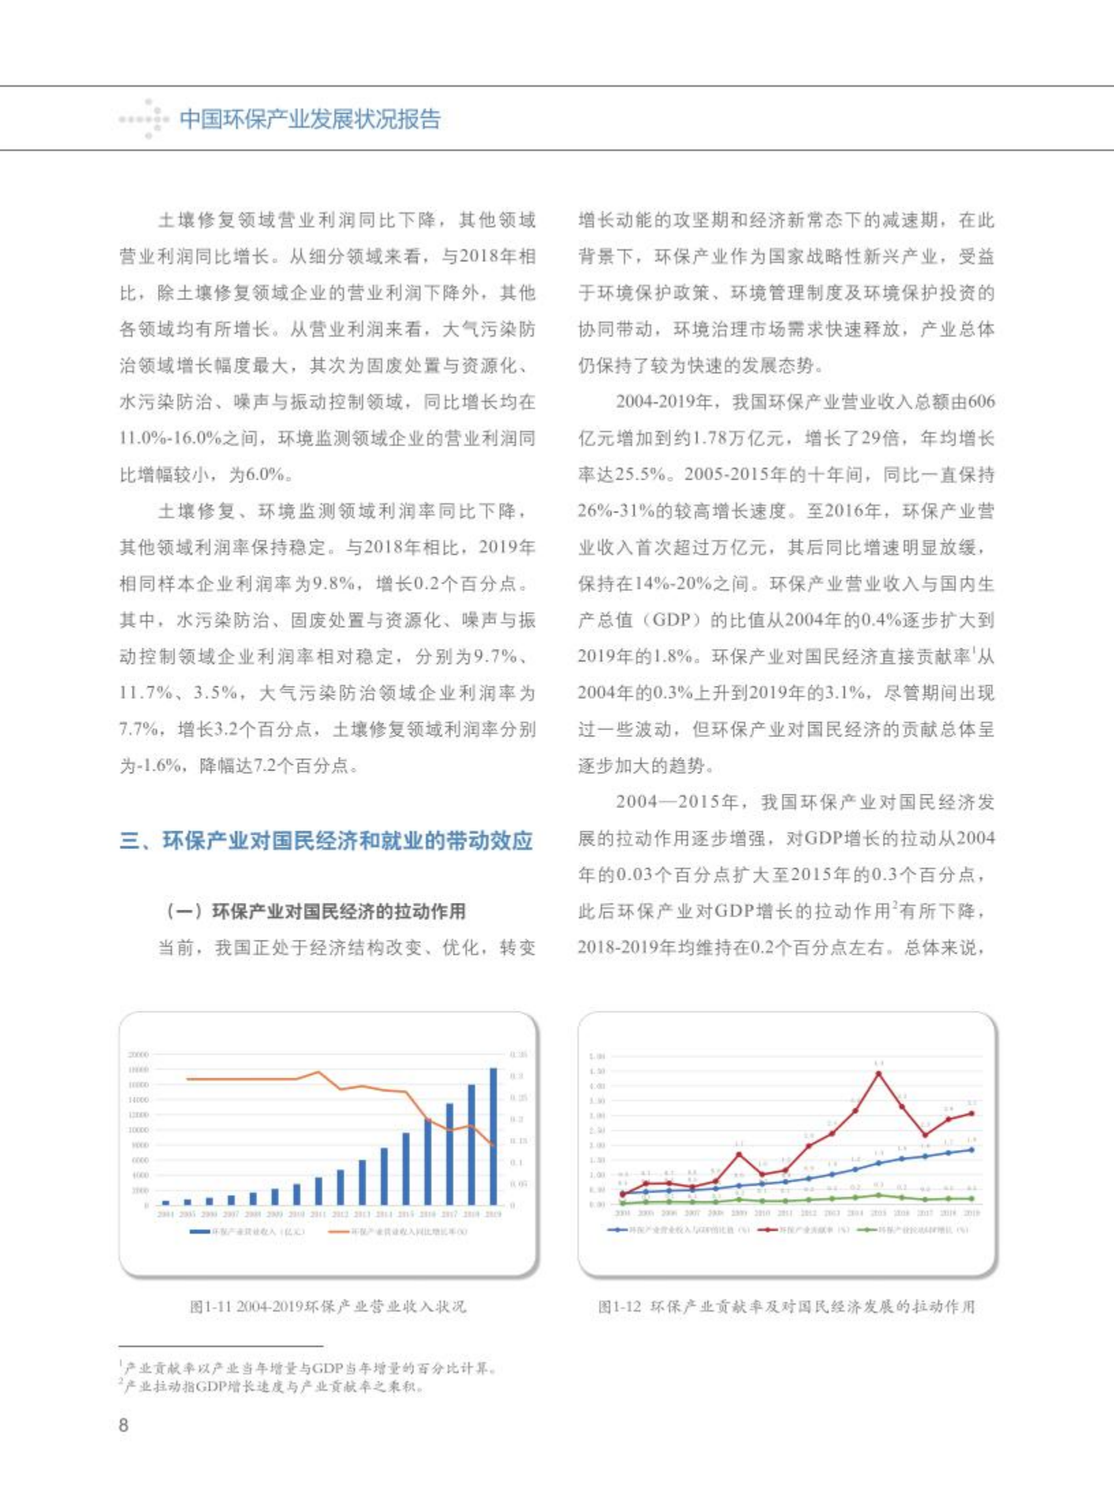 【2020】中国环保产业发展状况报告_09.png